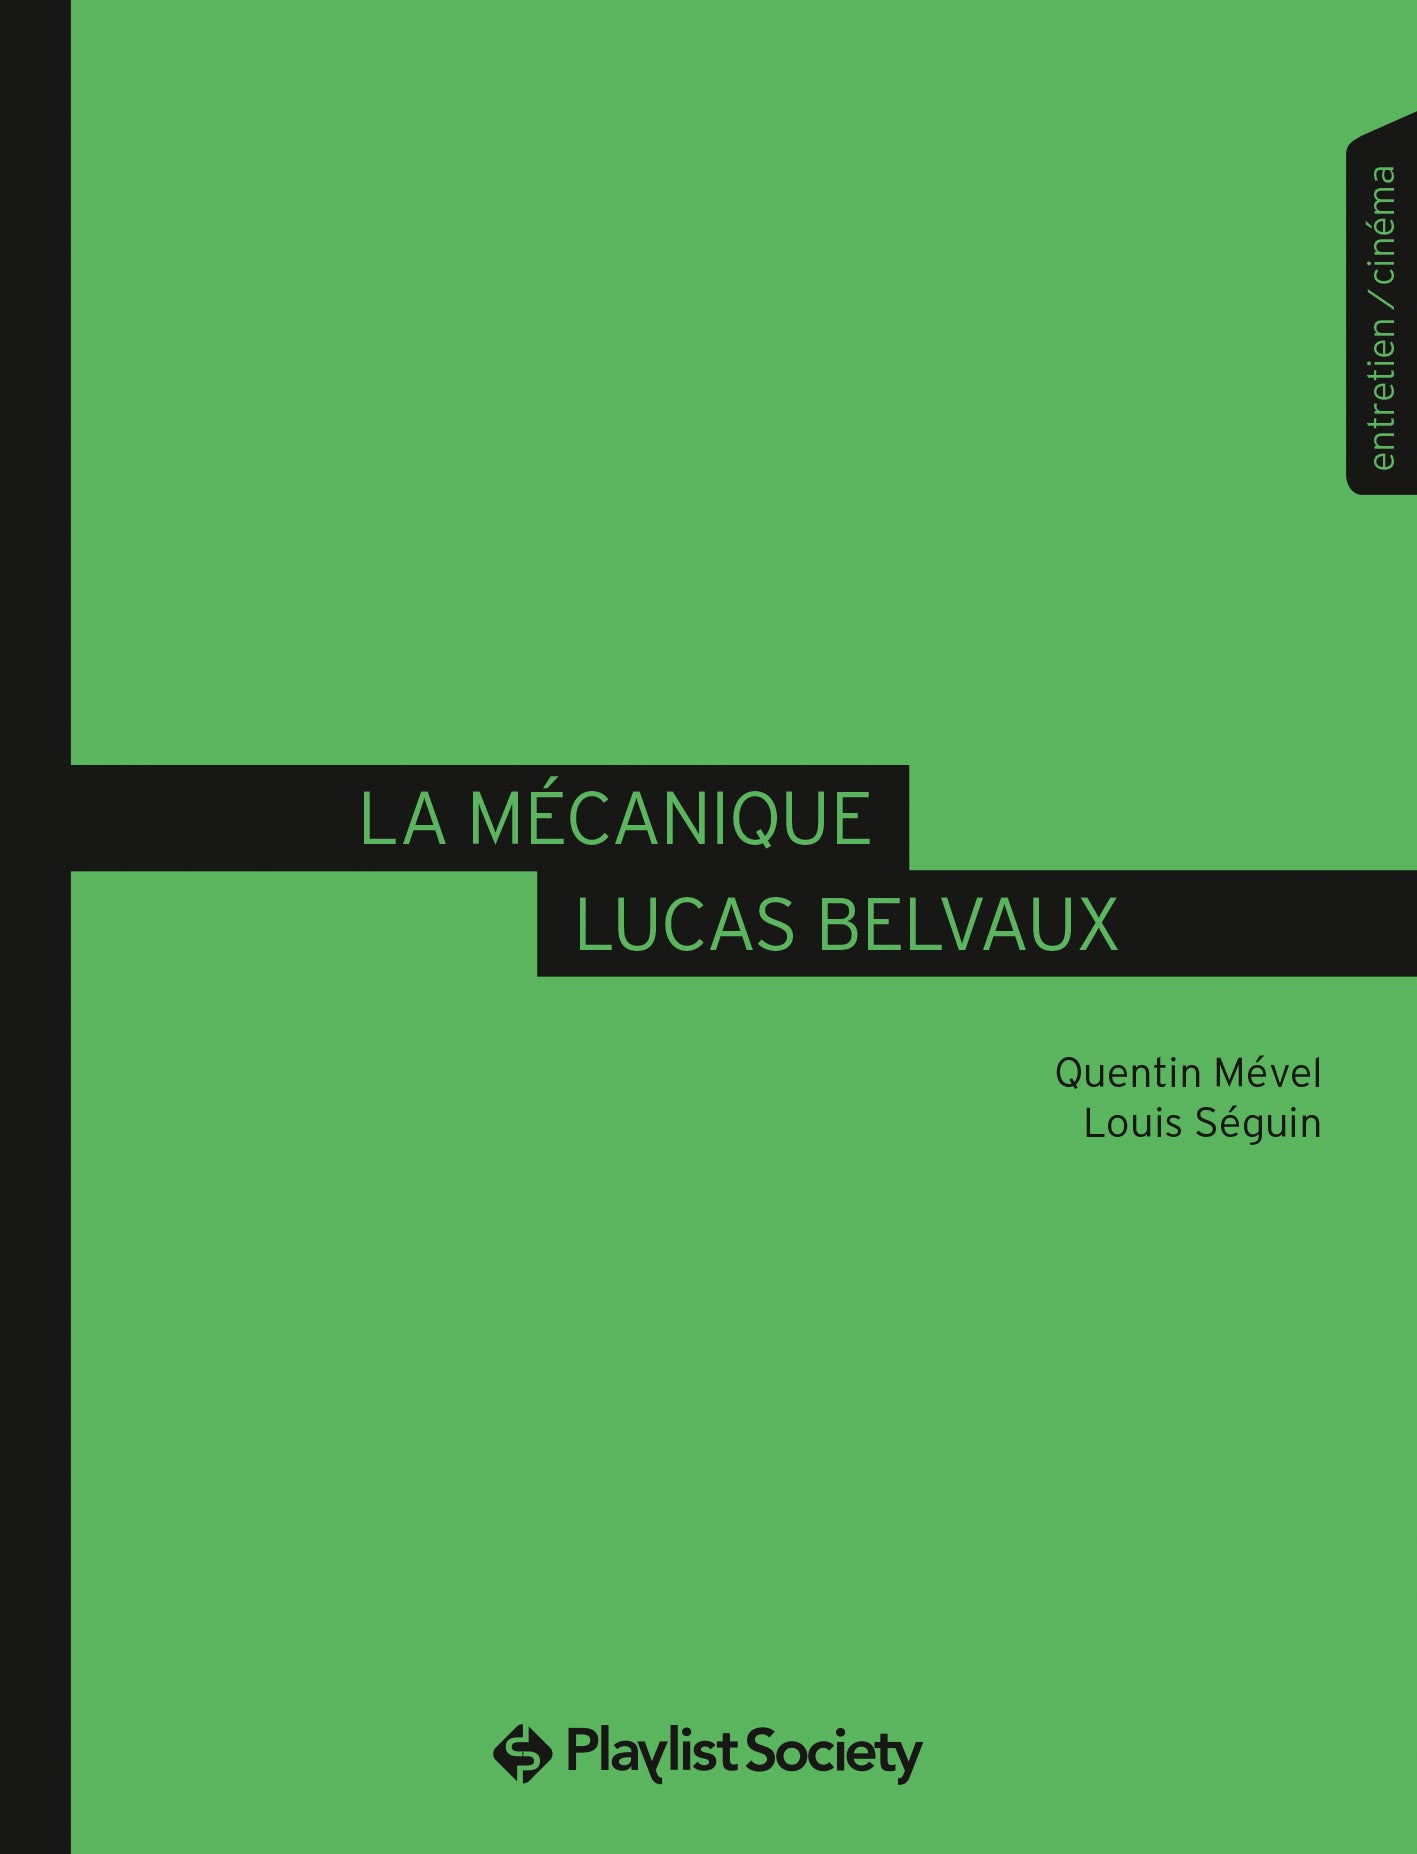 La Mécanique Lucas Belvaux - Quentin Mével / Louis Séguin